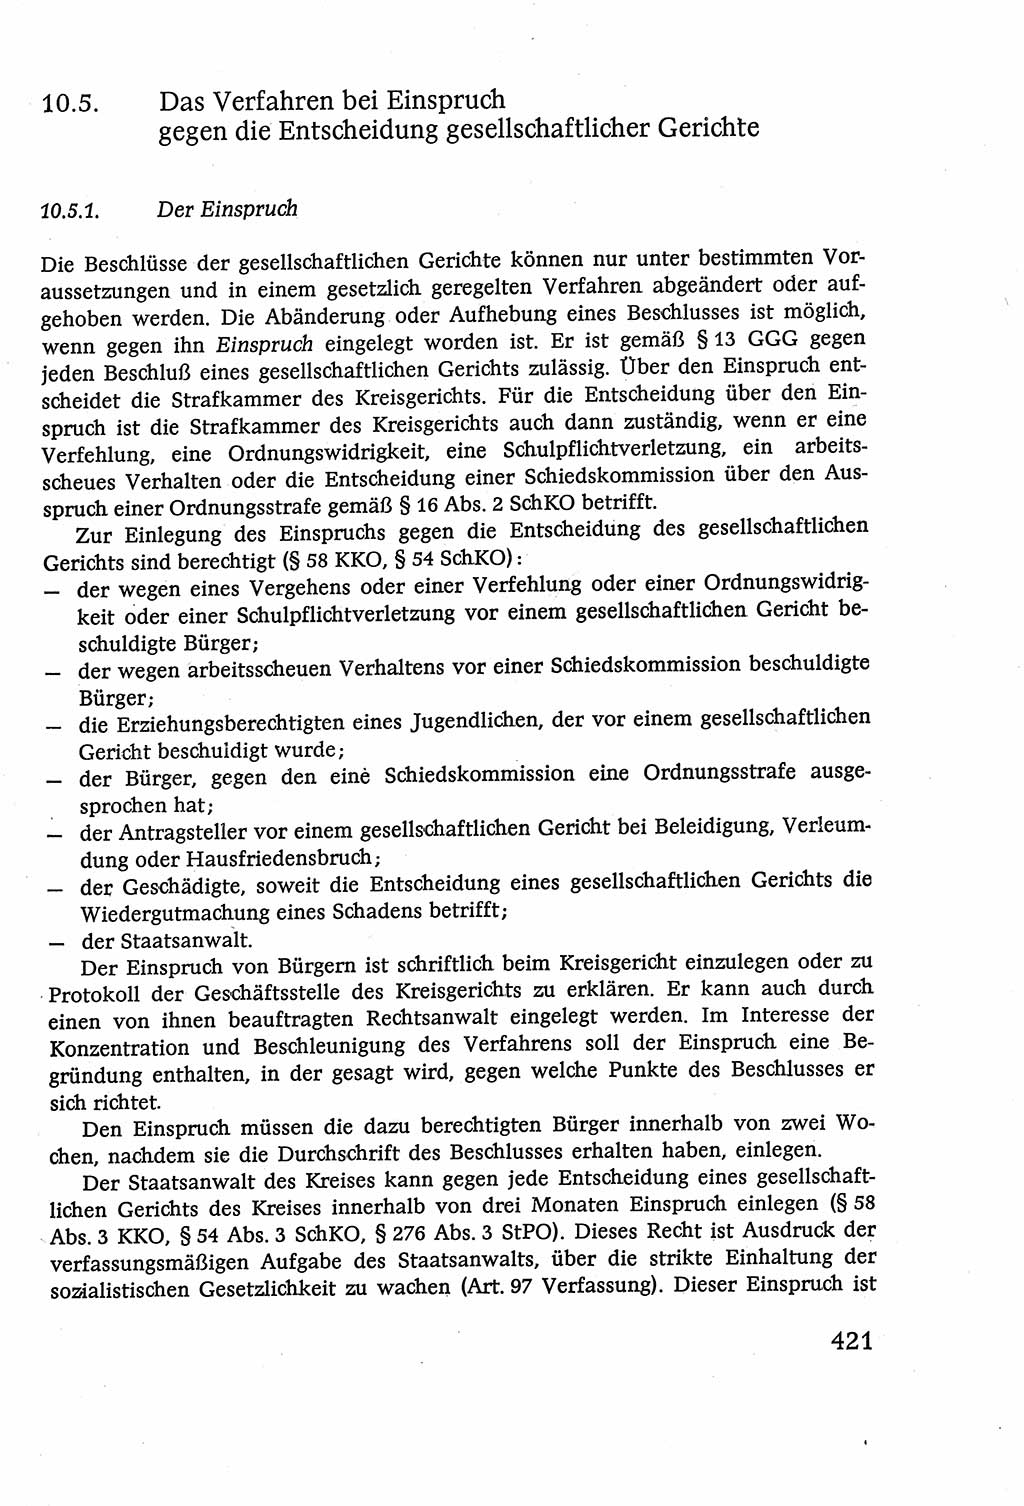 Strafverfahrensrecht [Deutsche Demokratische Republik (DDR)], Lehrbuch 1977, Seite 421 (Strafverf.-R. DDR Lb. 1977, S. 421)